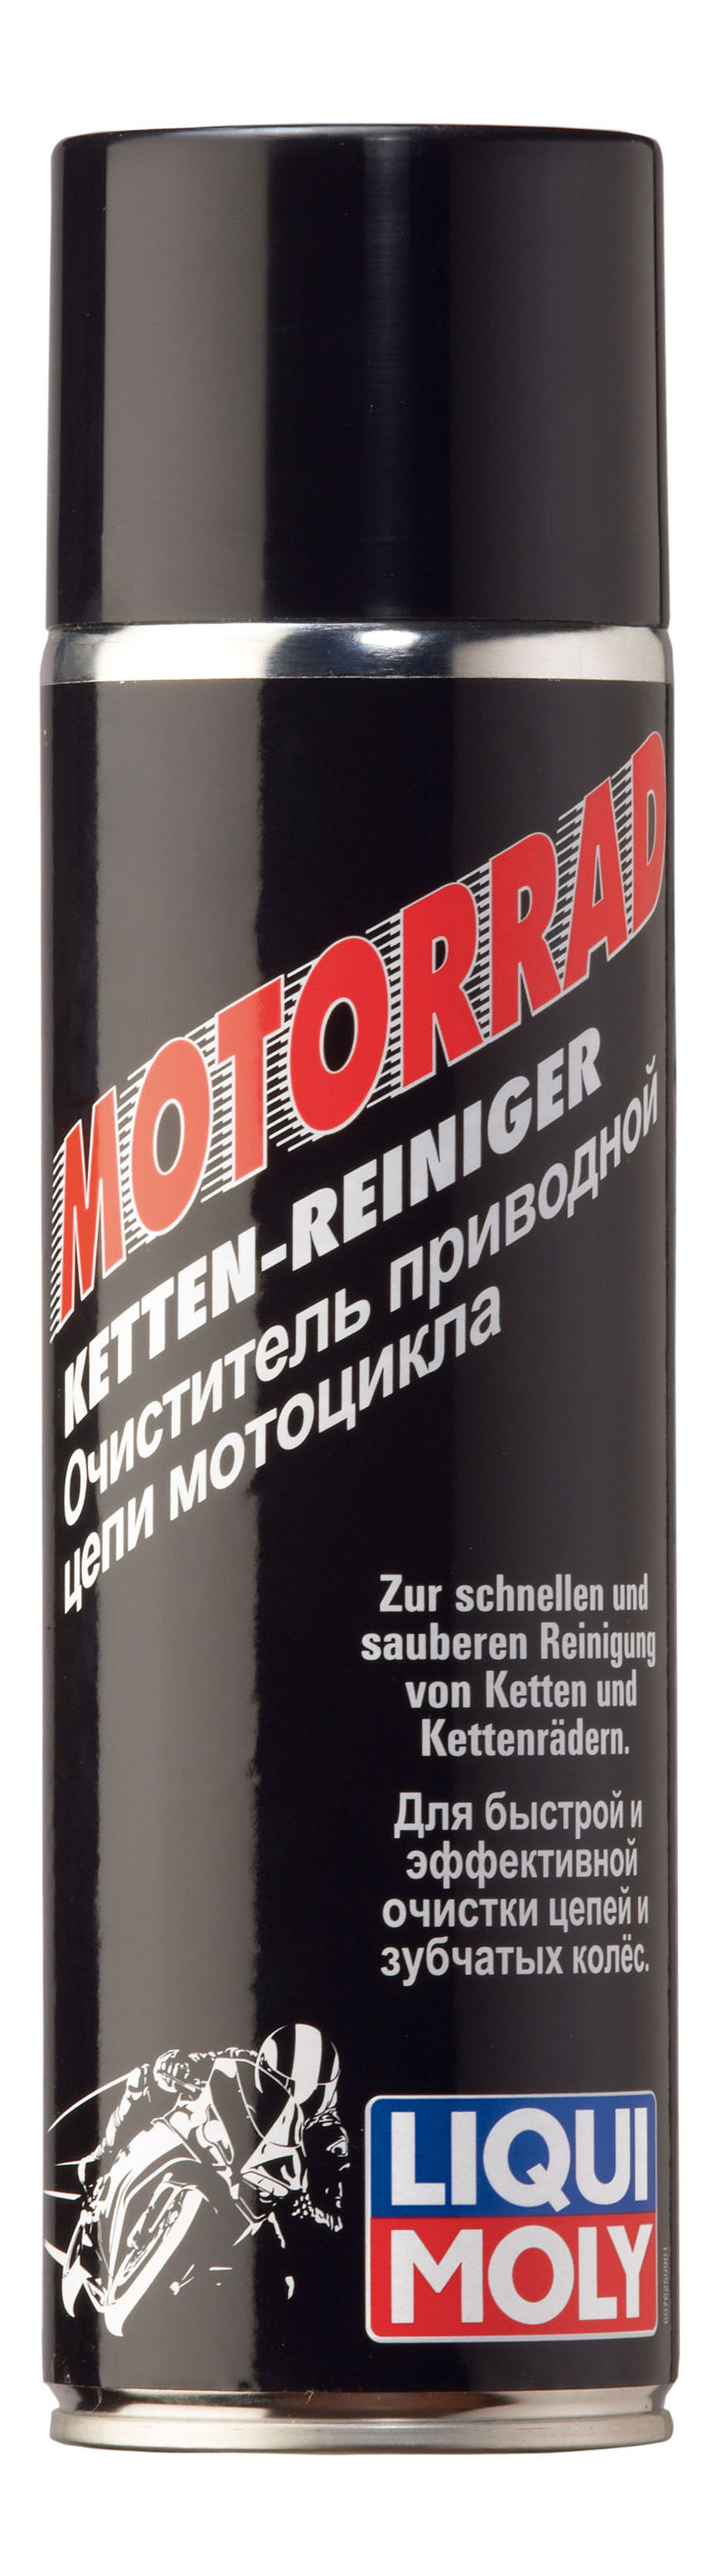 Очиститель приводной цепи мотоцикла LIQUI MOLY 7625 Motorbike Ketten-Reiniger